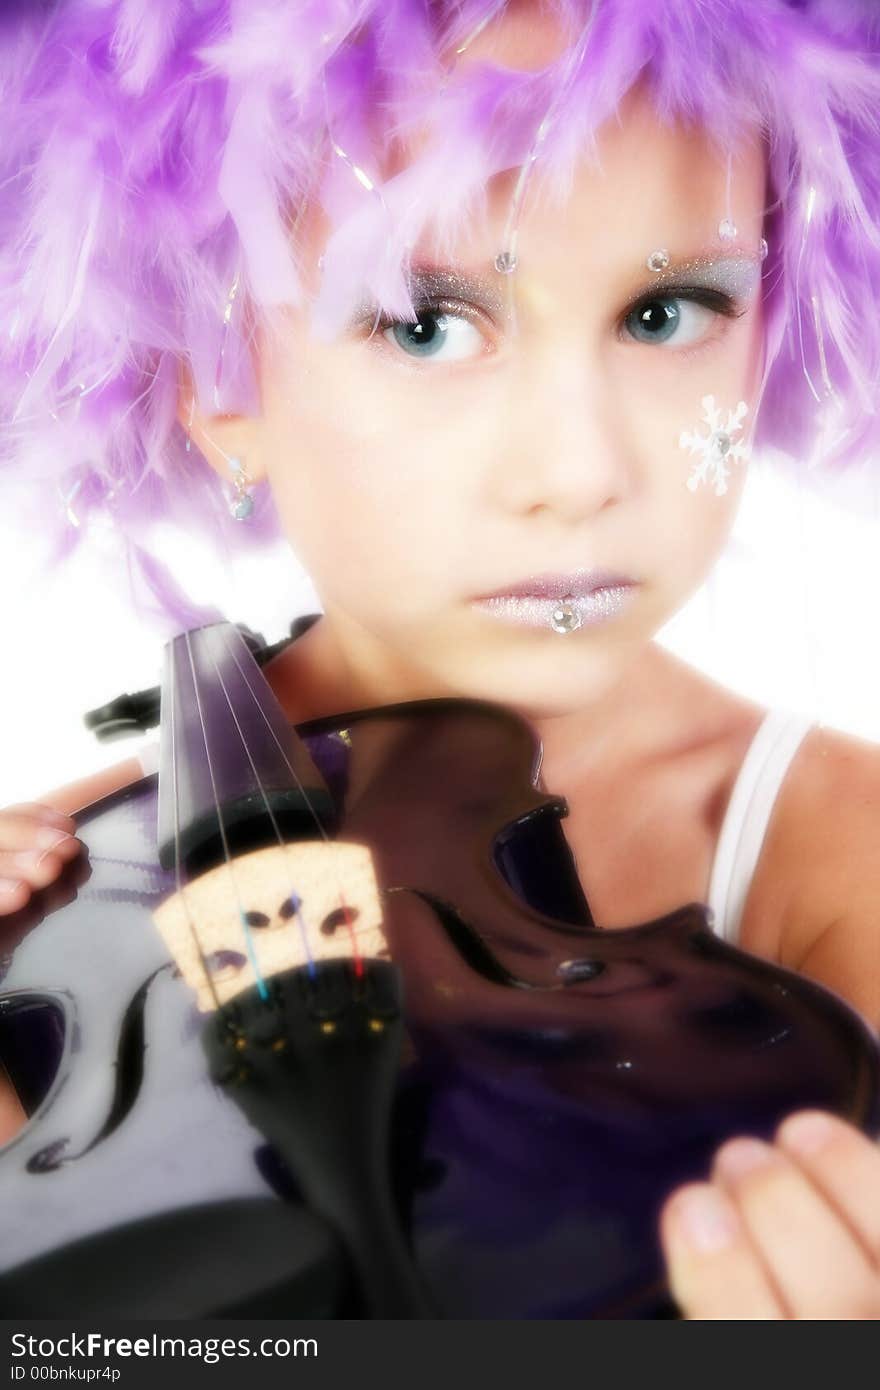 Beuatiful five year old girl in artistic make-up, purple feather wig, purple violin. Beuatiful five year old girl in artistic make-up, purple feather wig, purple violin.